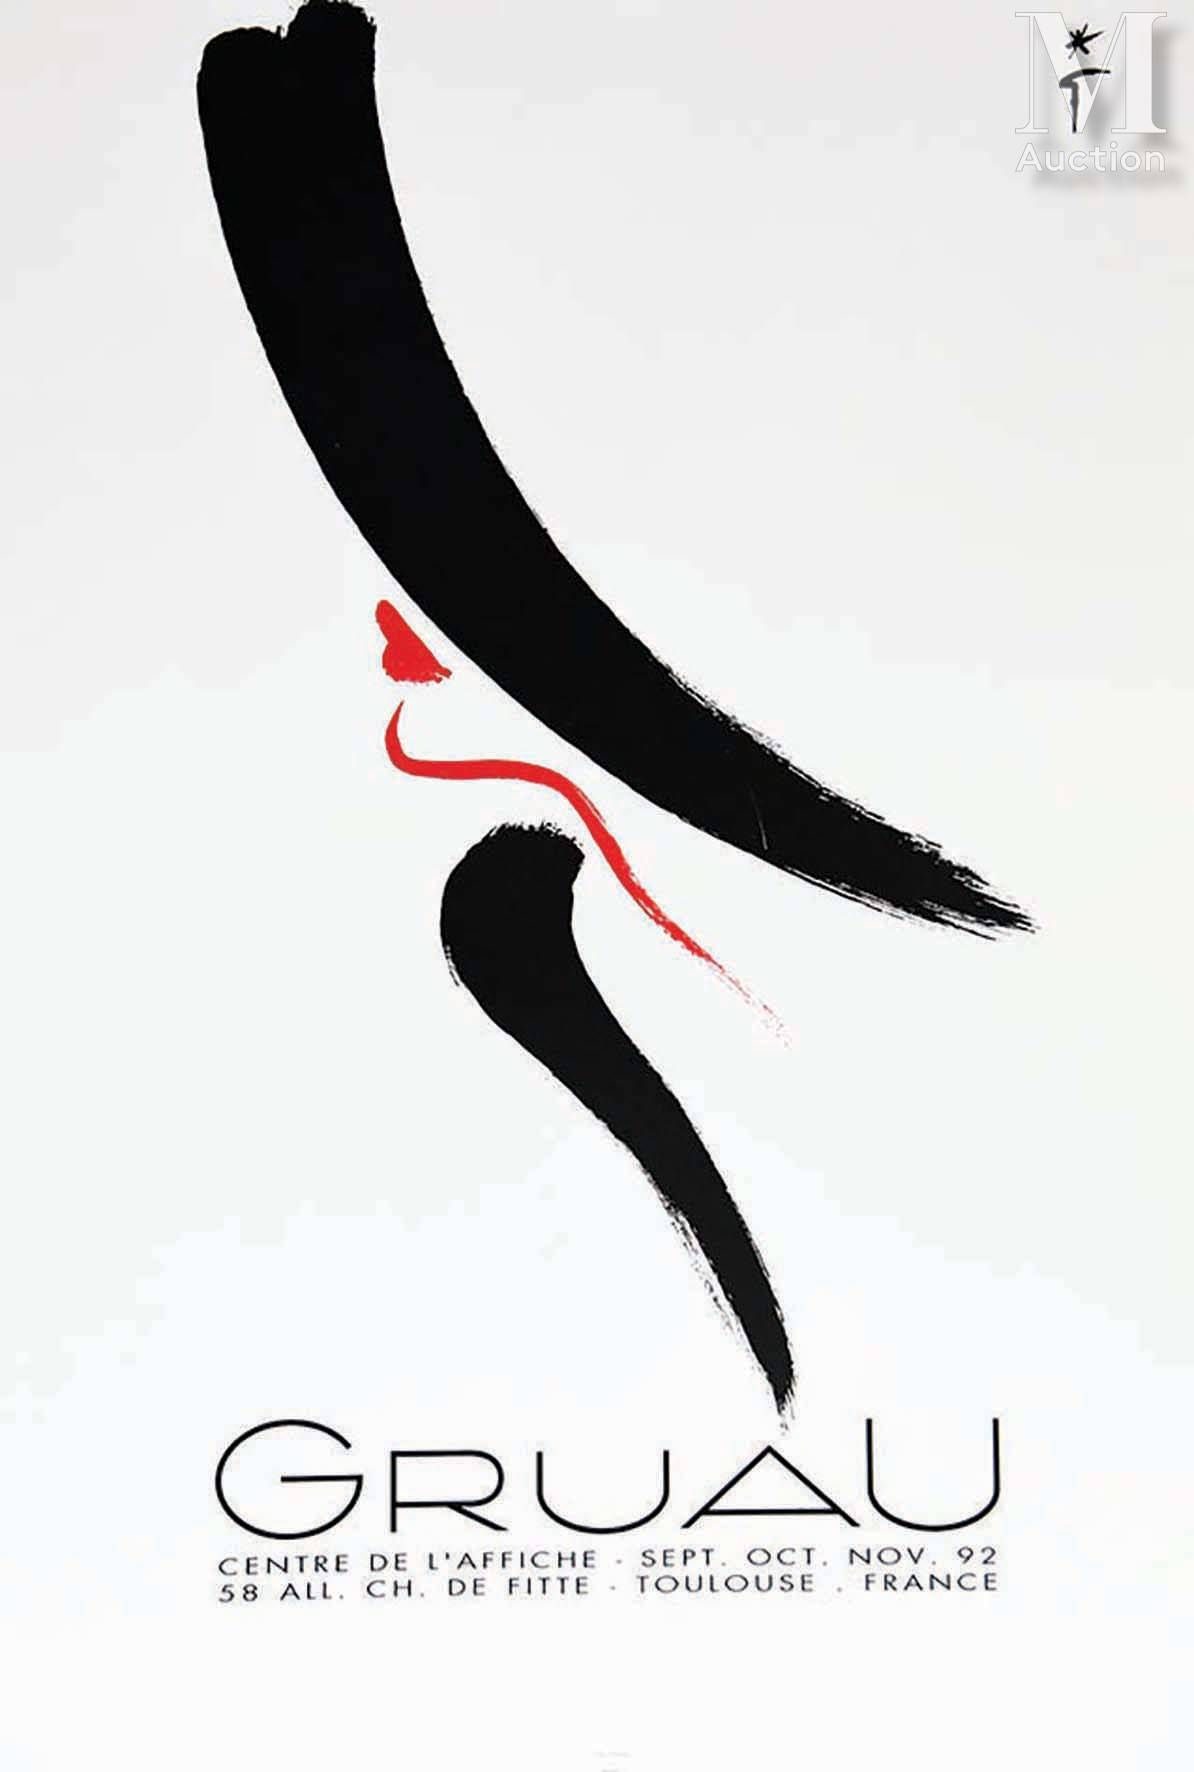 GRUAU RENE ( Renato Zavagli-Ricciardelli ) Gruau Centre de L'Affiche Toulouse
Gr&hellip;